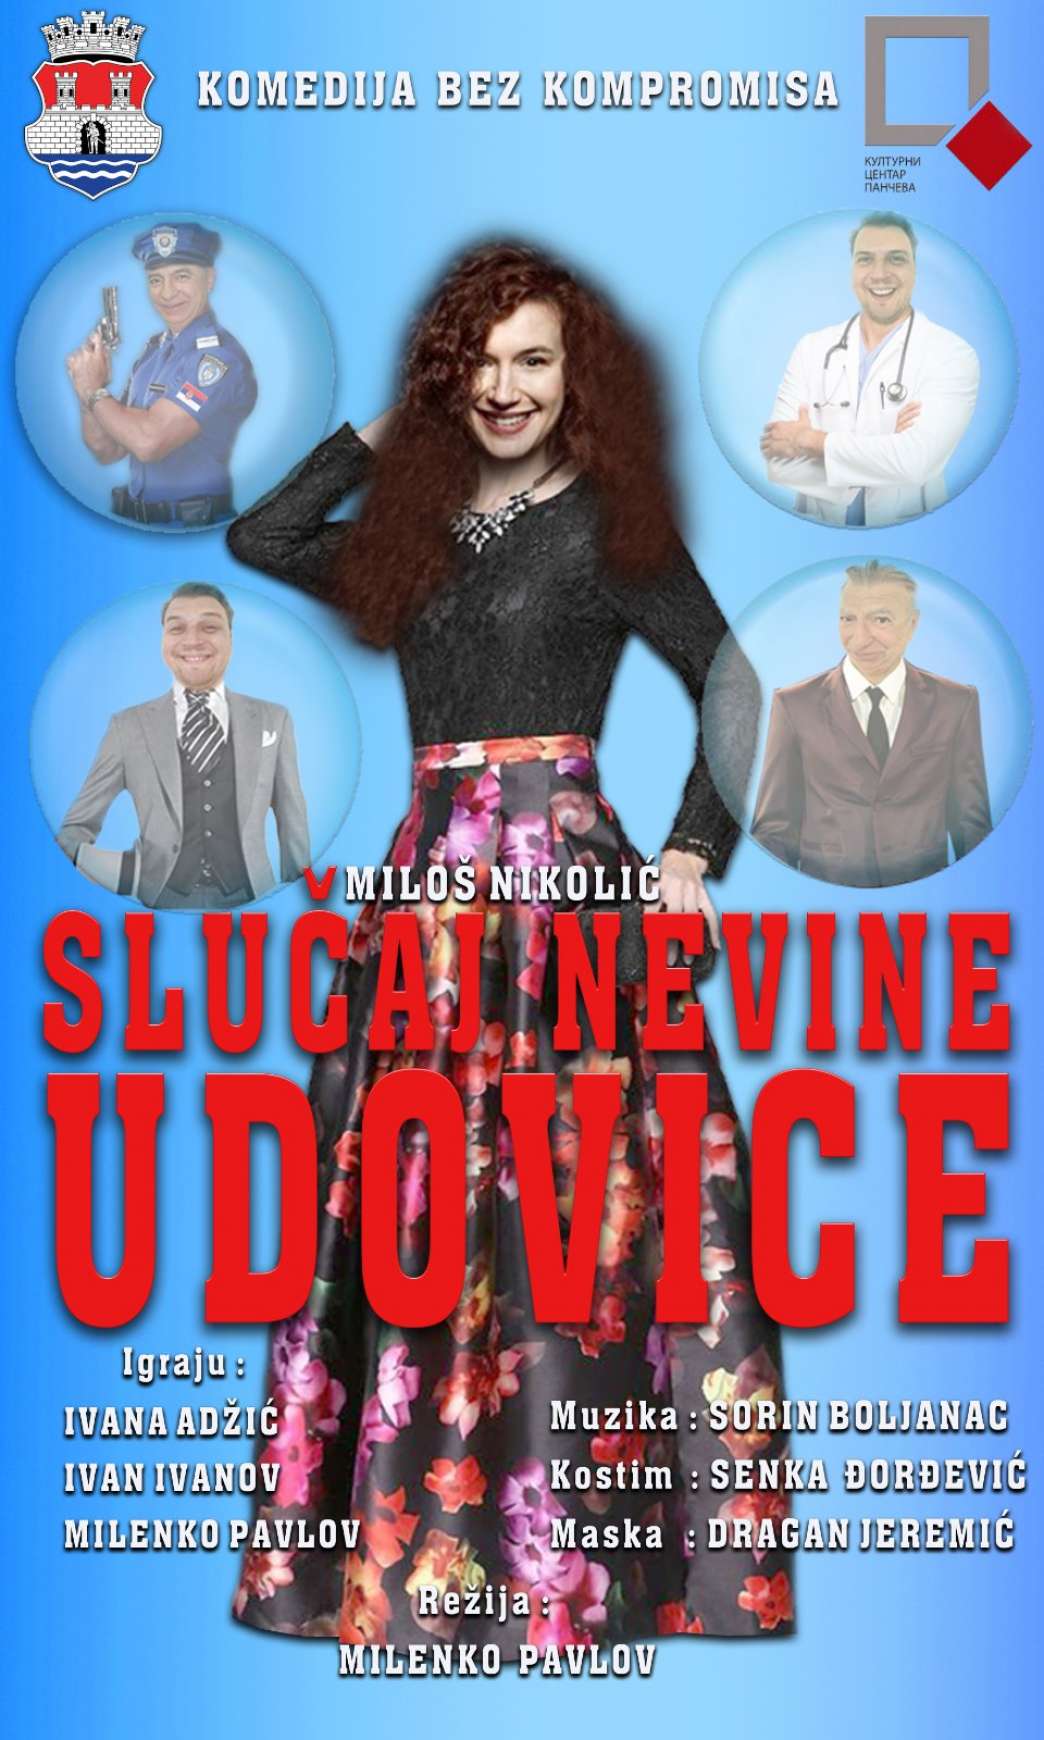 Komedija „Slučaj nevine Udovice“ pančevca Miloša Nikolića 13. novembra u "Akademiji 28"